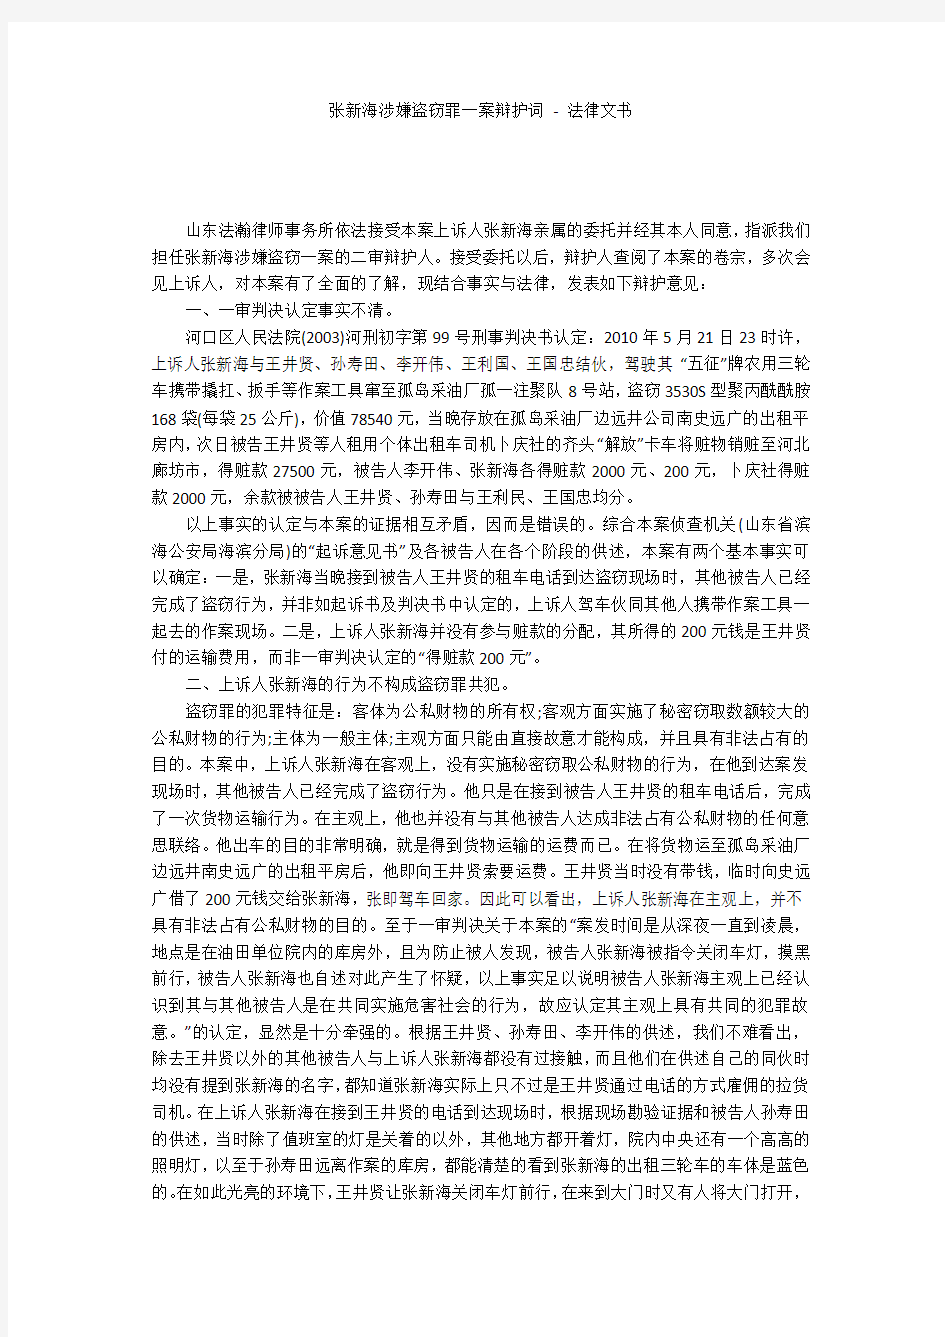 张新海涉嫌盗窃罪一案辩护词 - 法律文书 